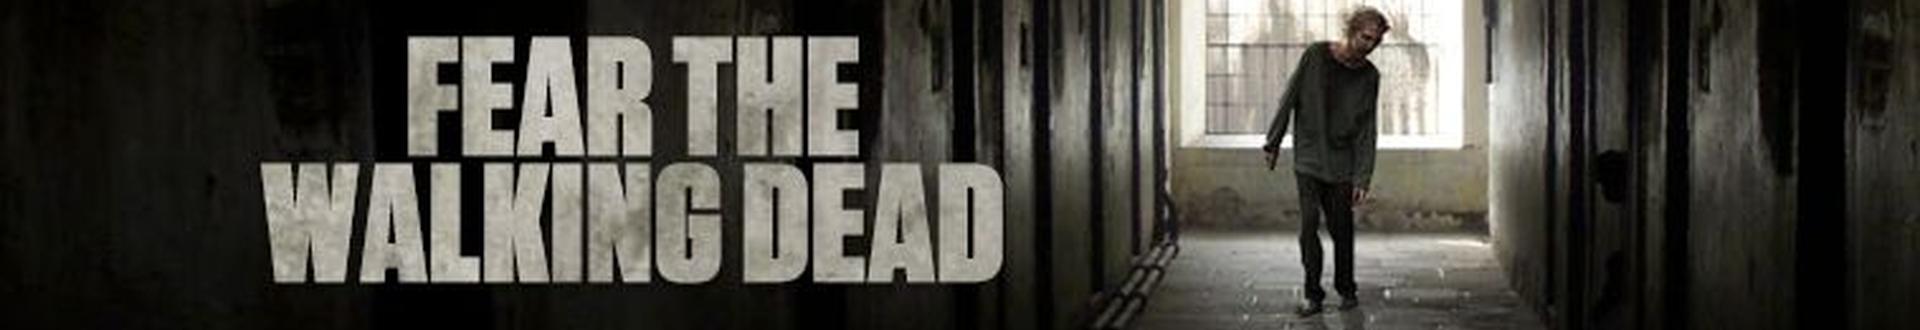 Image illustrative de Fear the Walking Dead